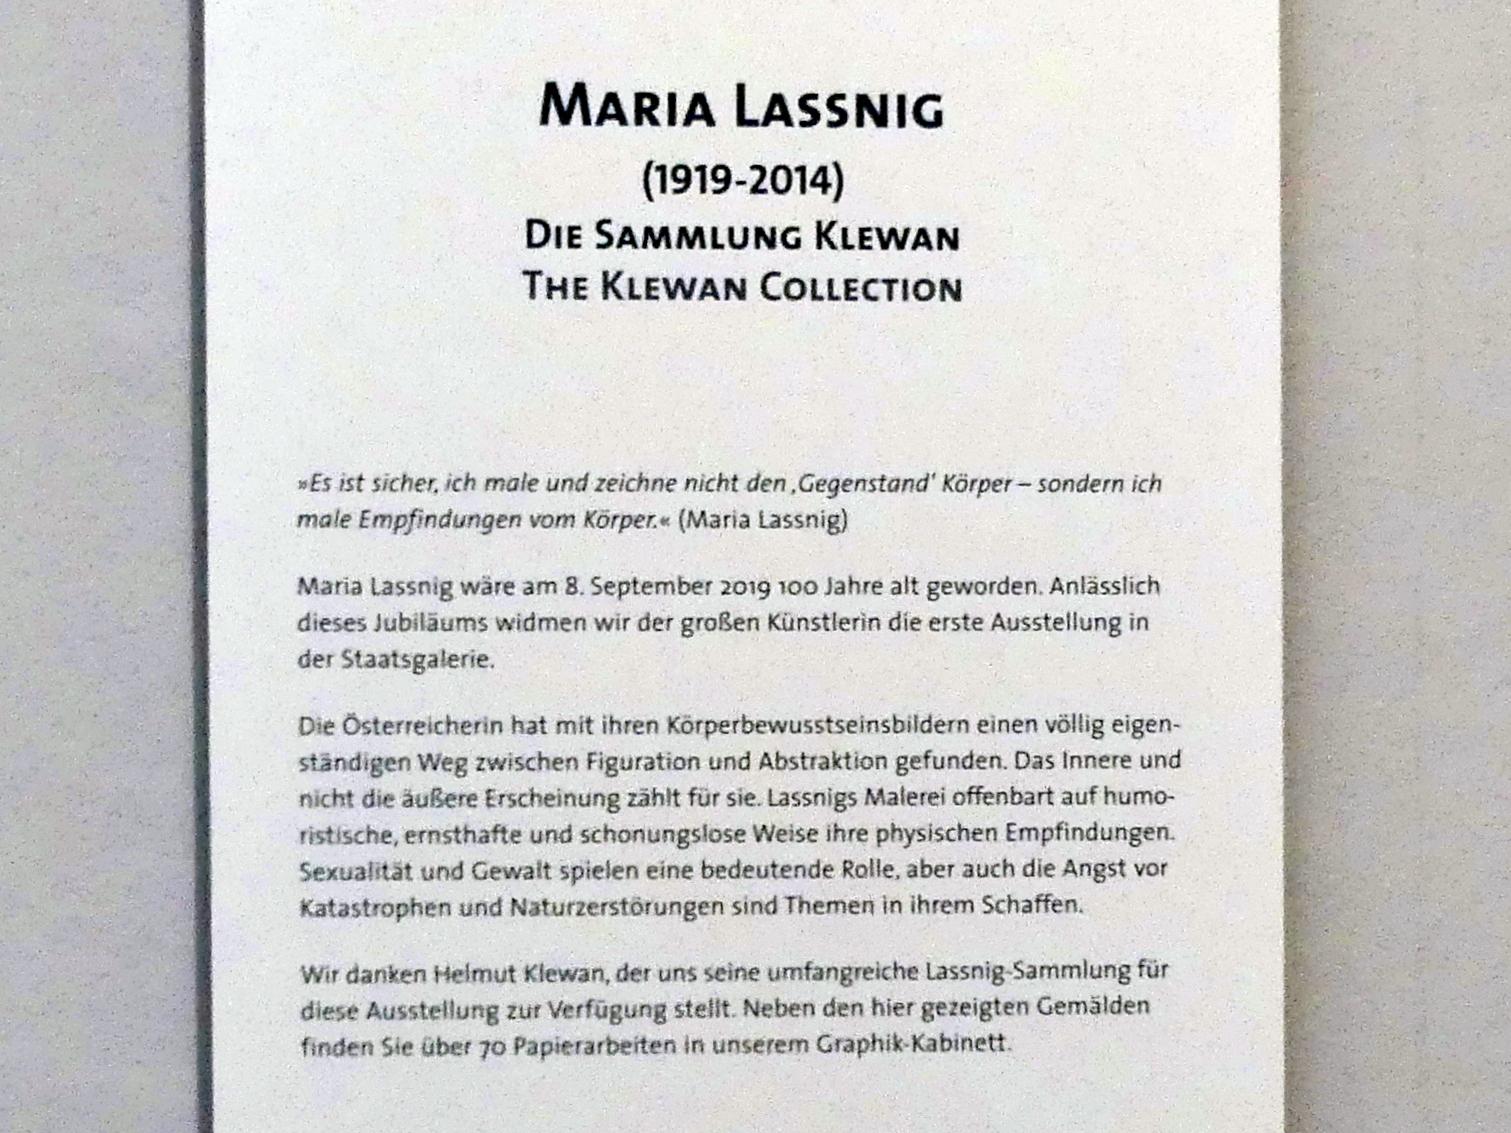 Stuttgart, Staatsgalerie, Ausstellung "Maria Lassnig - Die Sammlung Klewan" vom 14.03.-28.07.2019, Bild 4/4